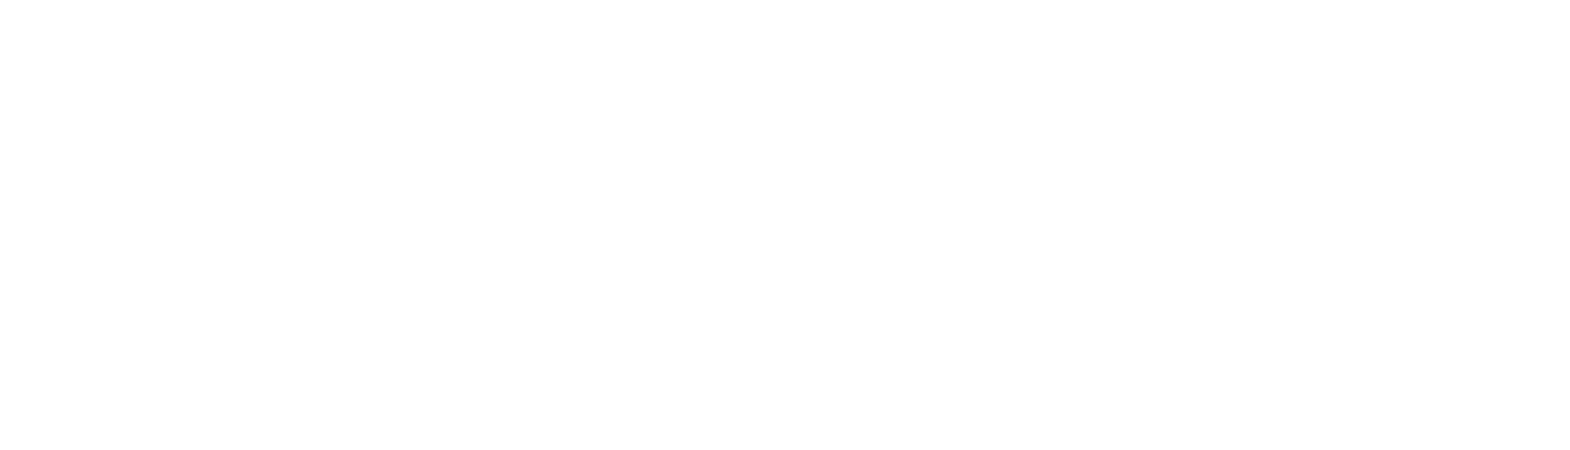 Global Fashion Group logo grand pour les fonds sombres (PNG transparent)